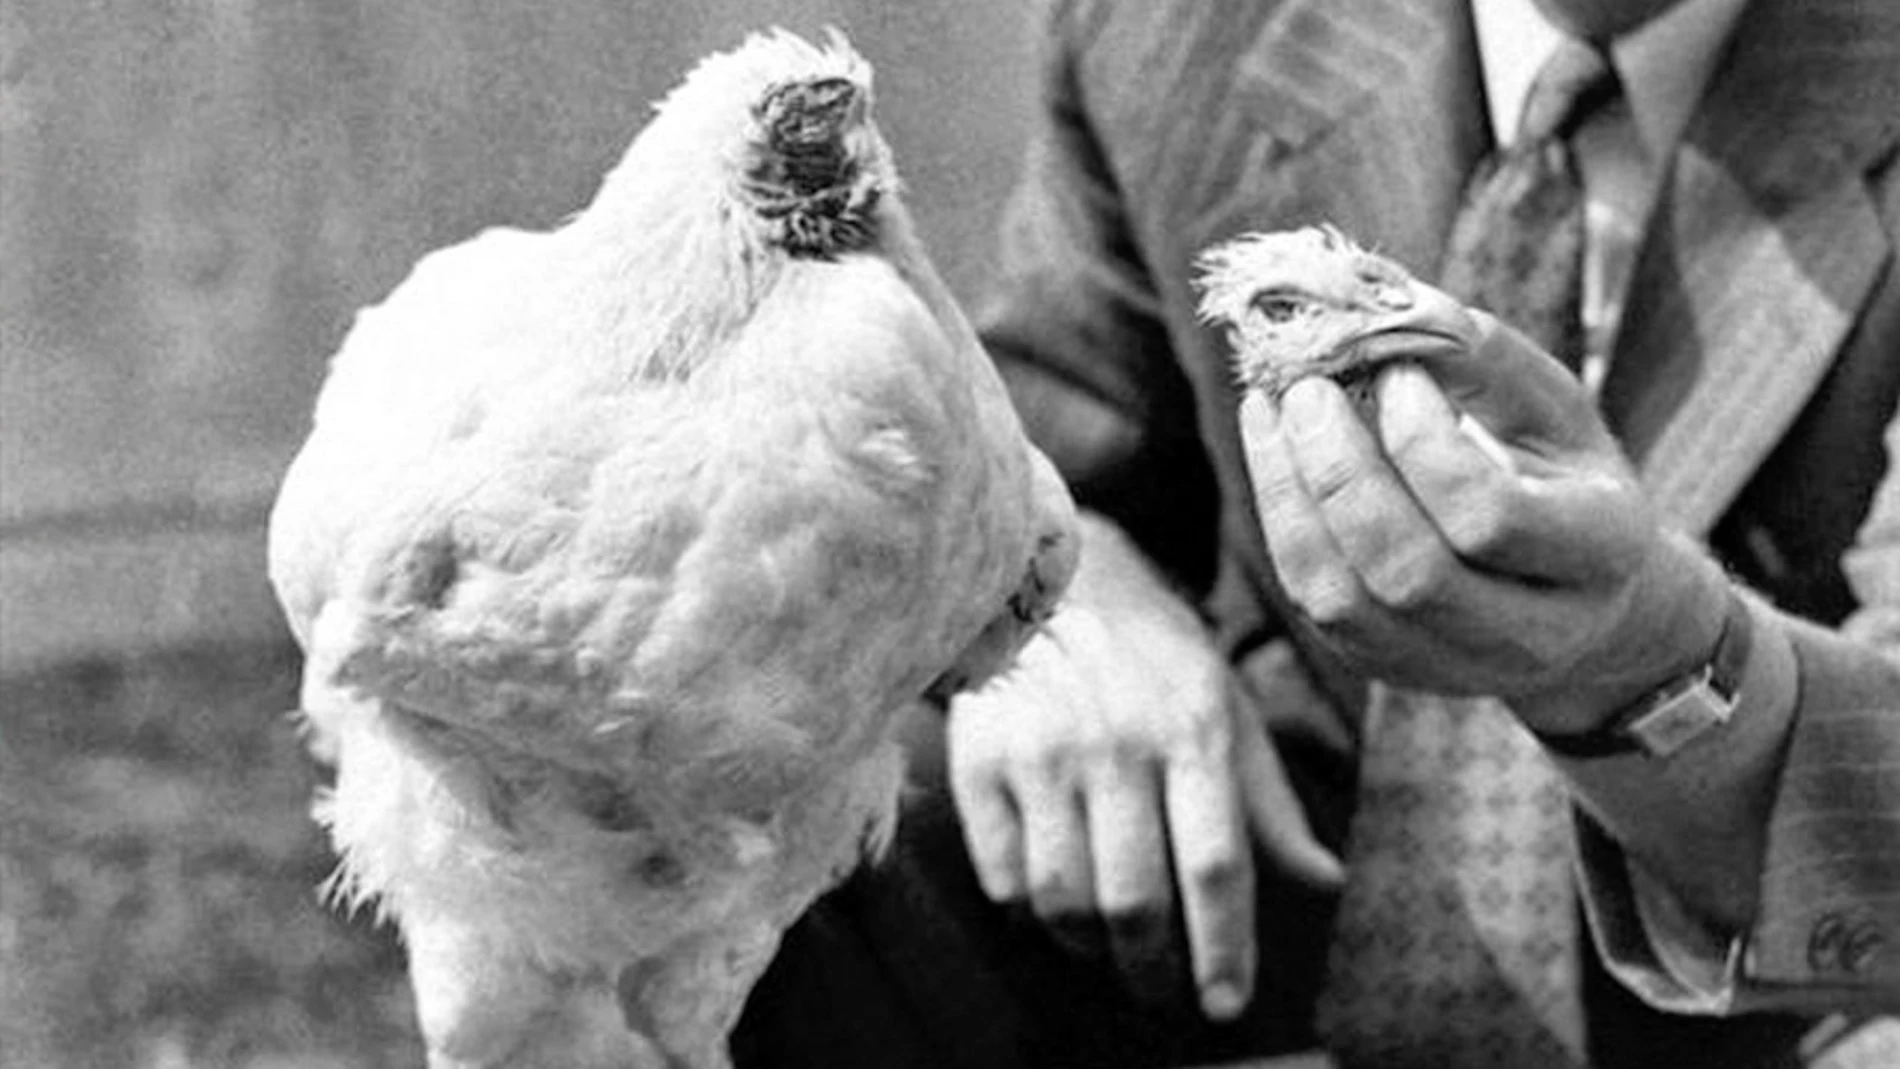 El pollo sin cabeza, conocido como Mike, en la foto junto a su cabeza, sujetada por Lloyd Olsen